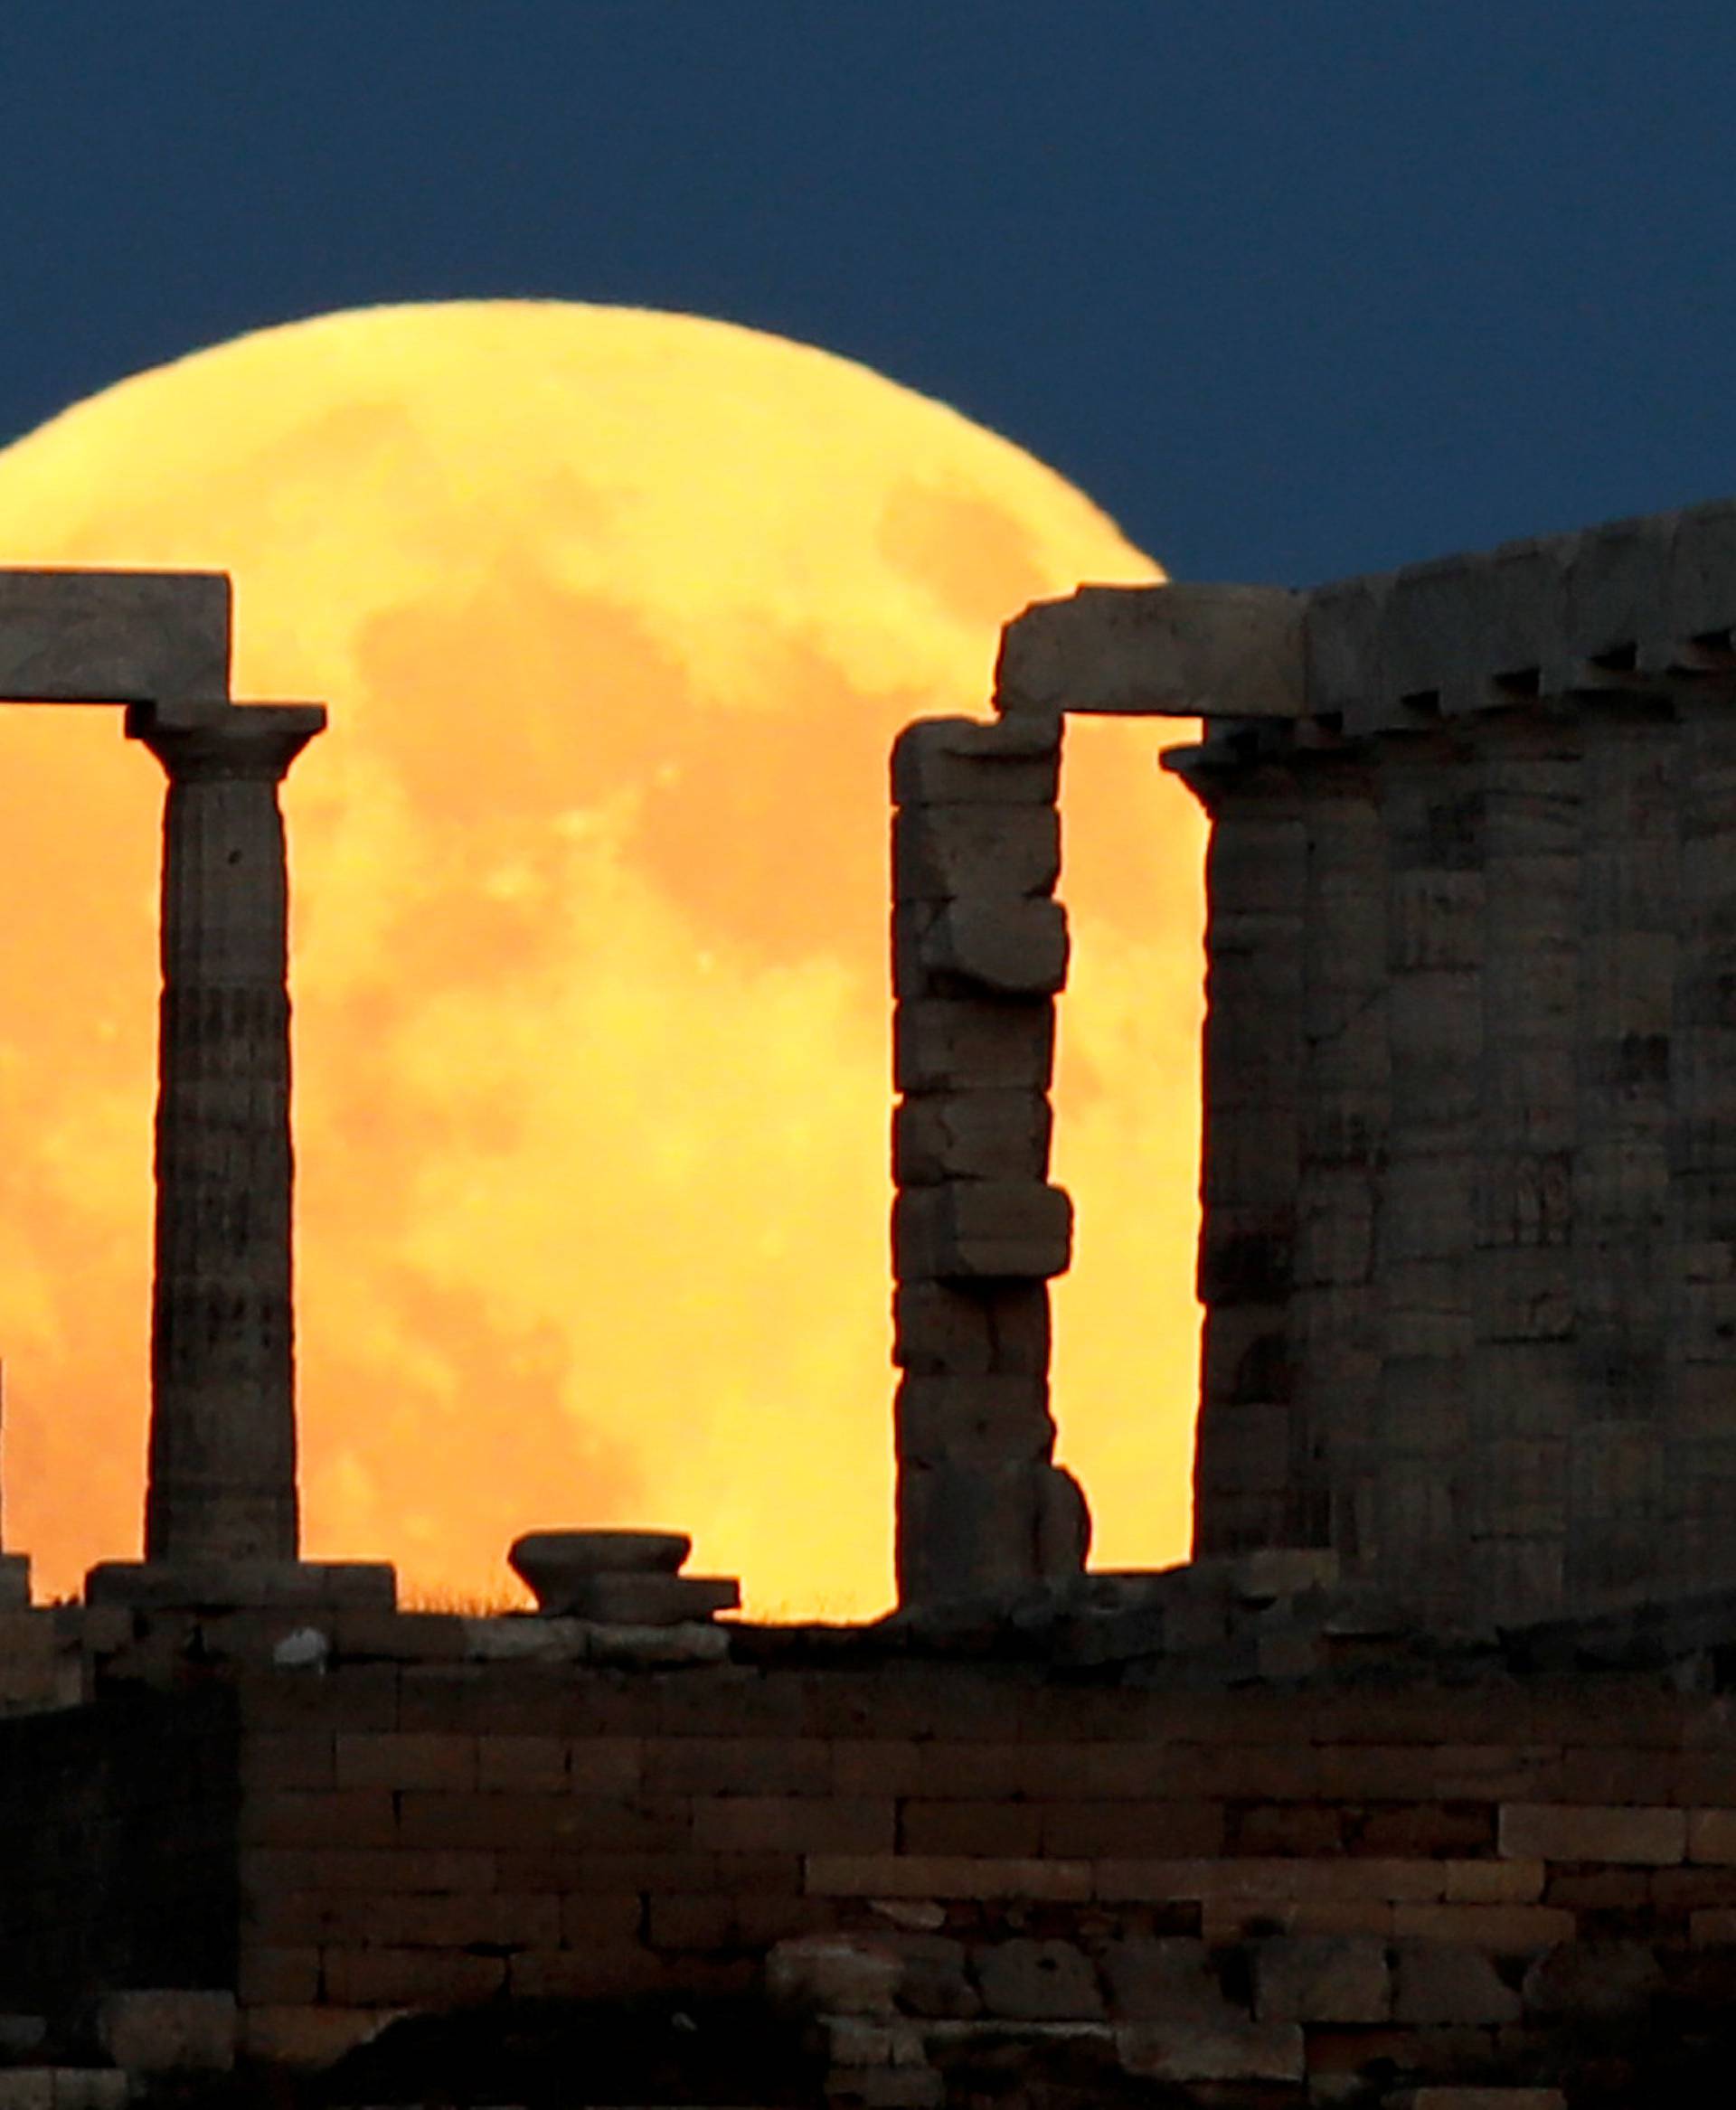 Lunar eclipse in Greece